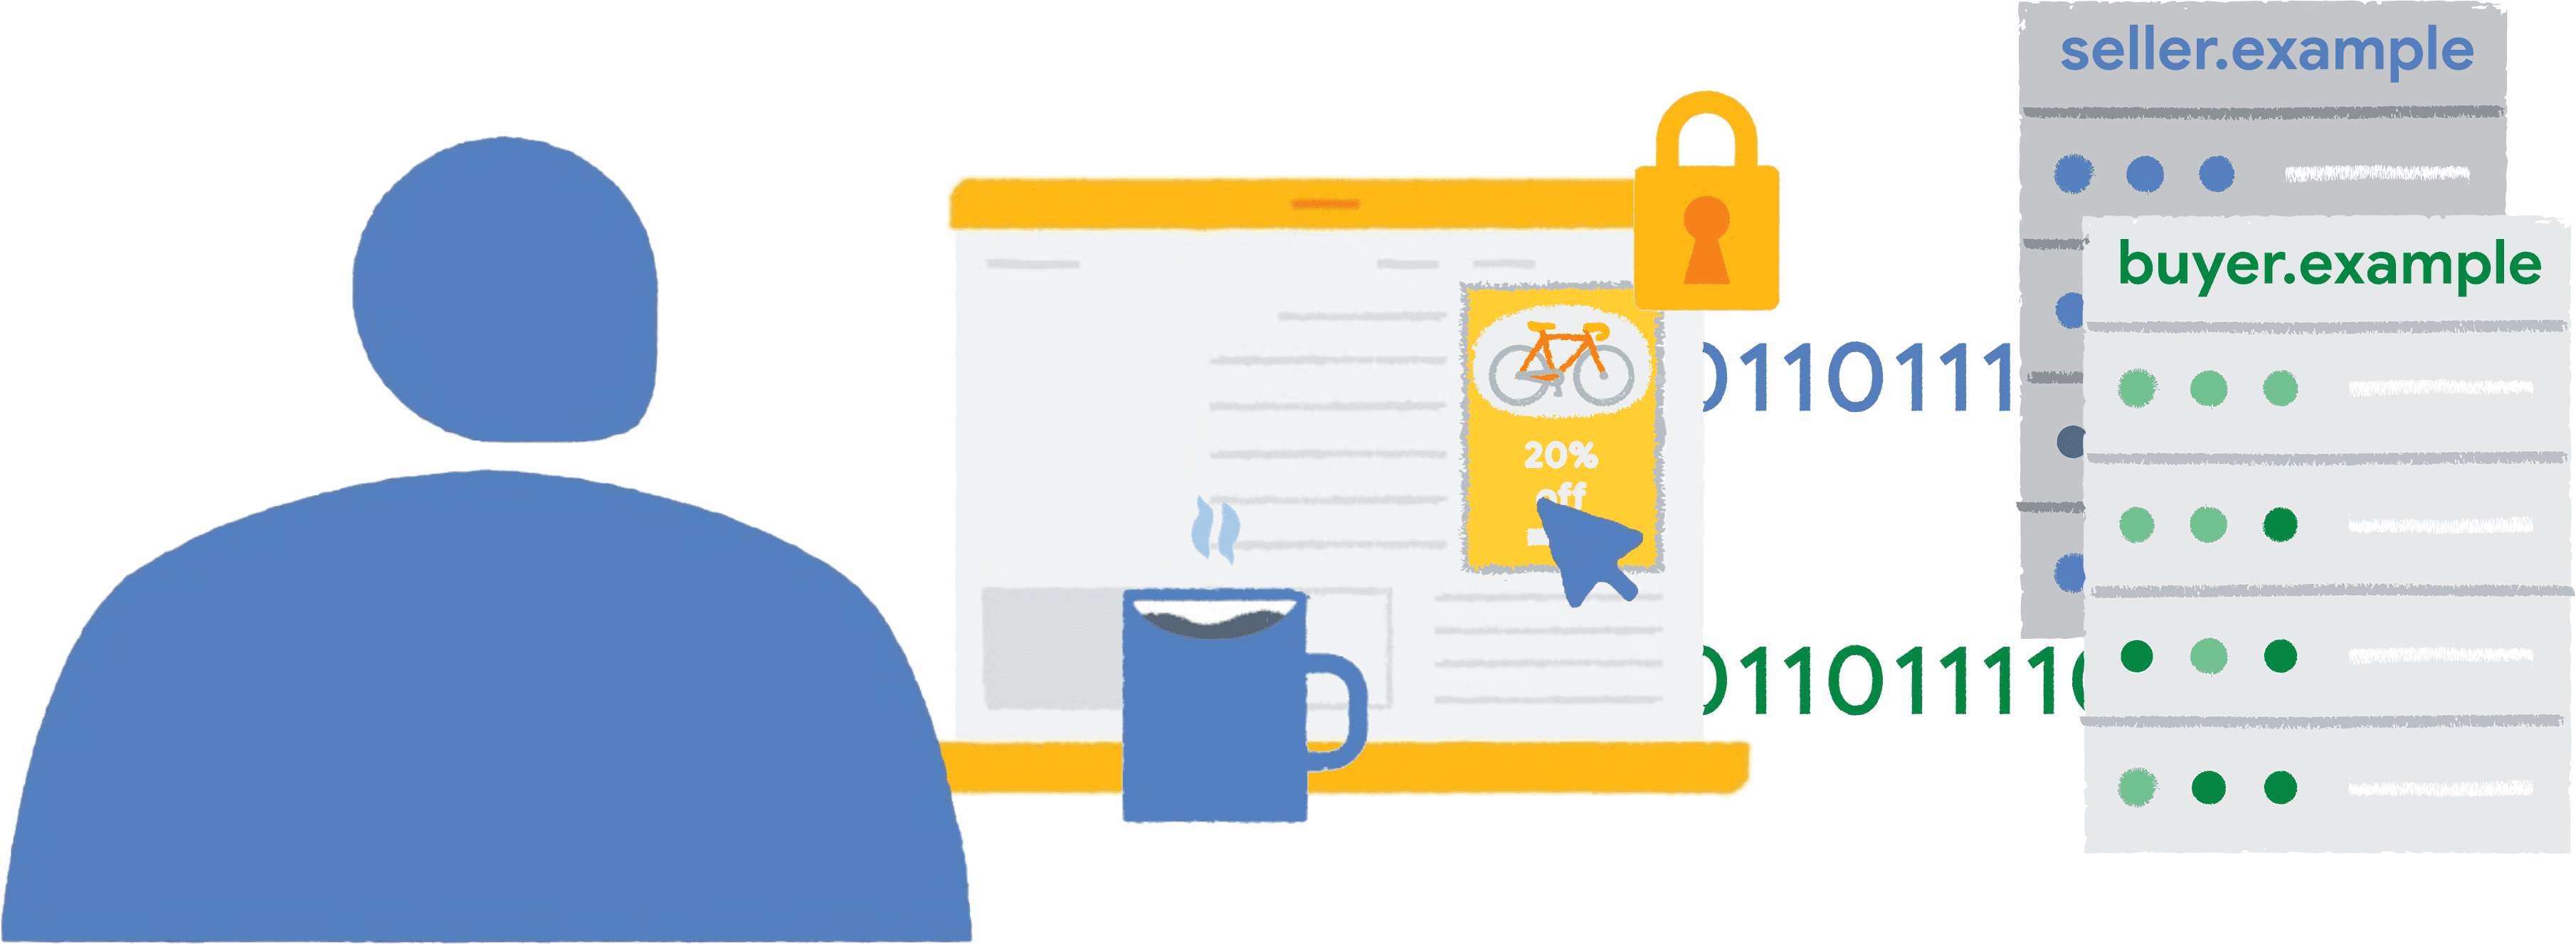 Una persona hace clic en el anuncio de una bicicleta incrustado con un marco cercado en un sitio web de noticias. Los datos del informe se envían al vendedor y a los compradores.